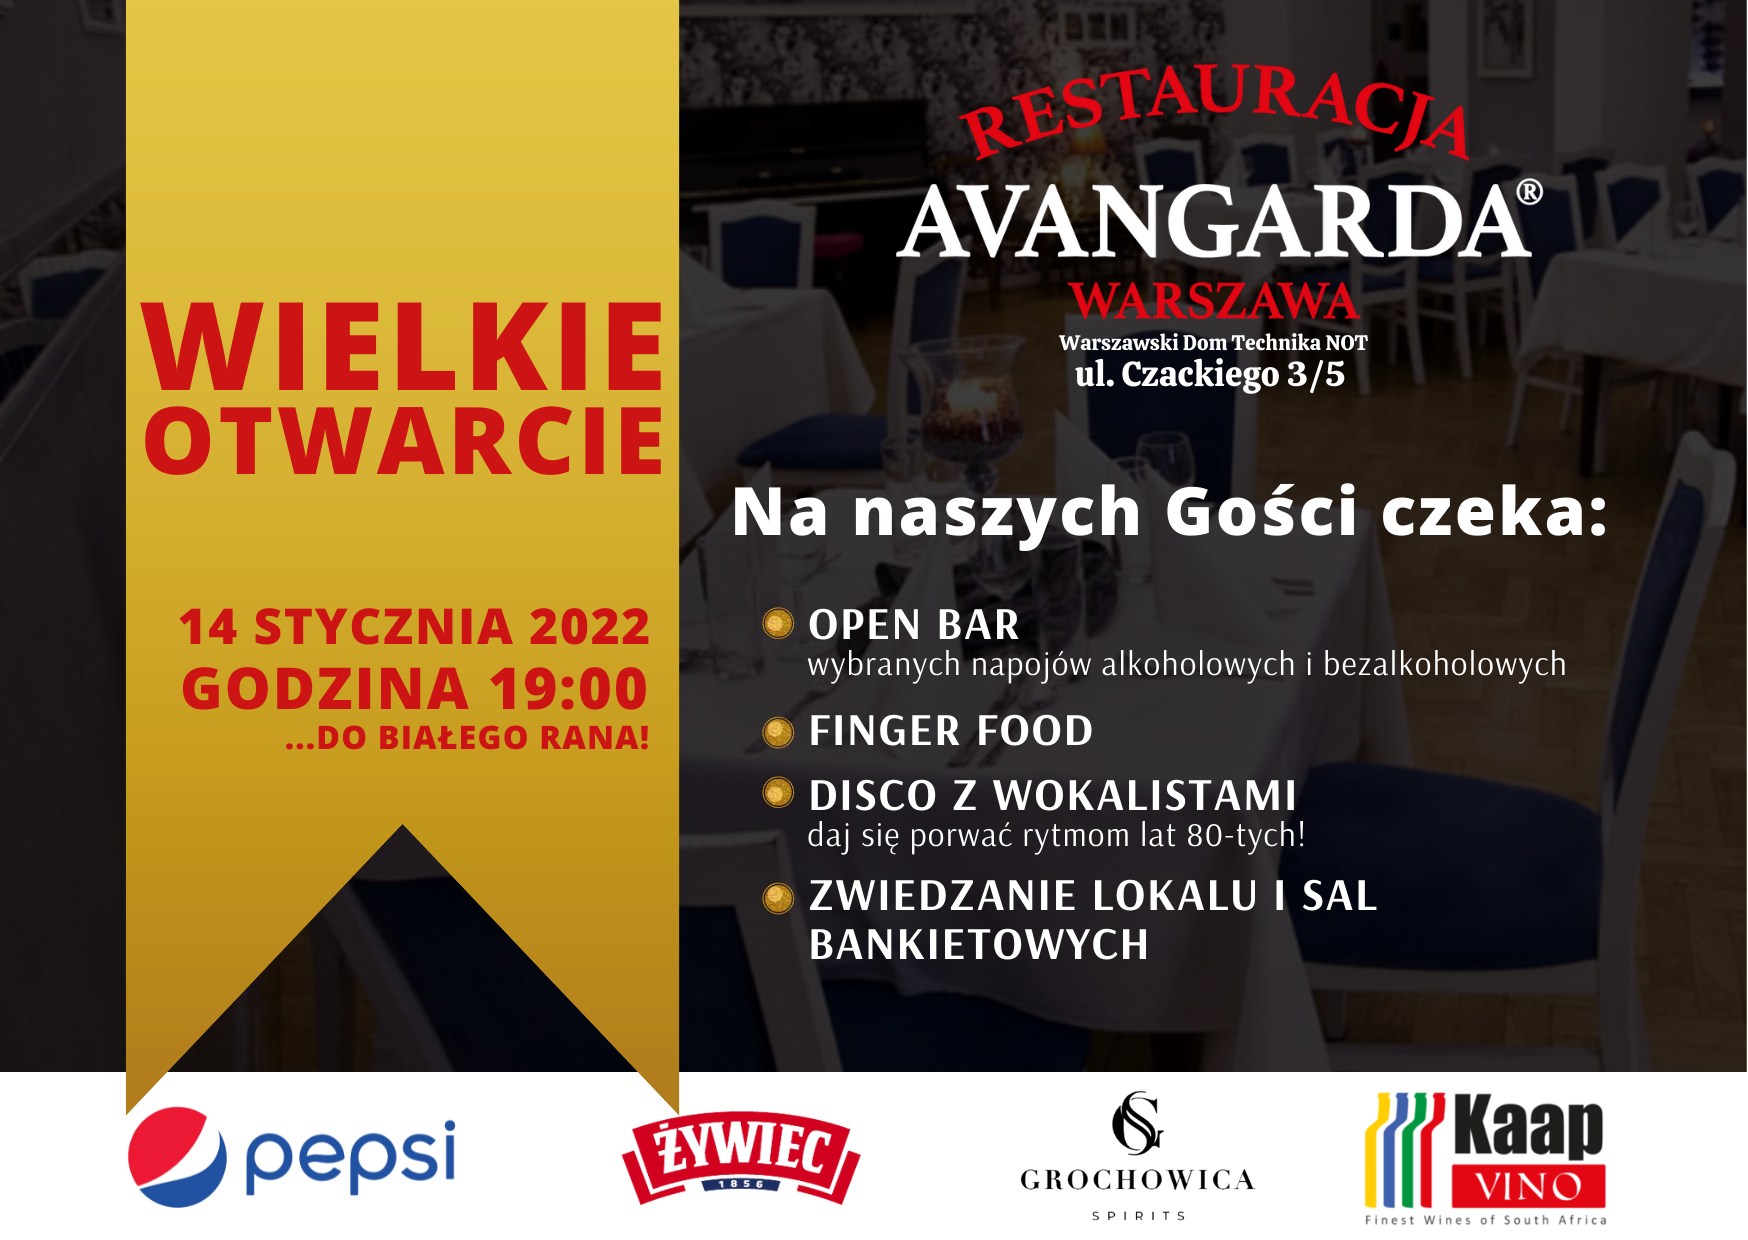 Wielkie Otwarcie Restauracji Avangarda